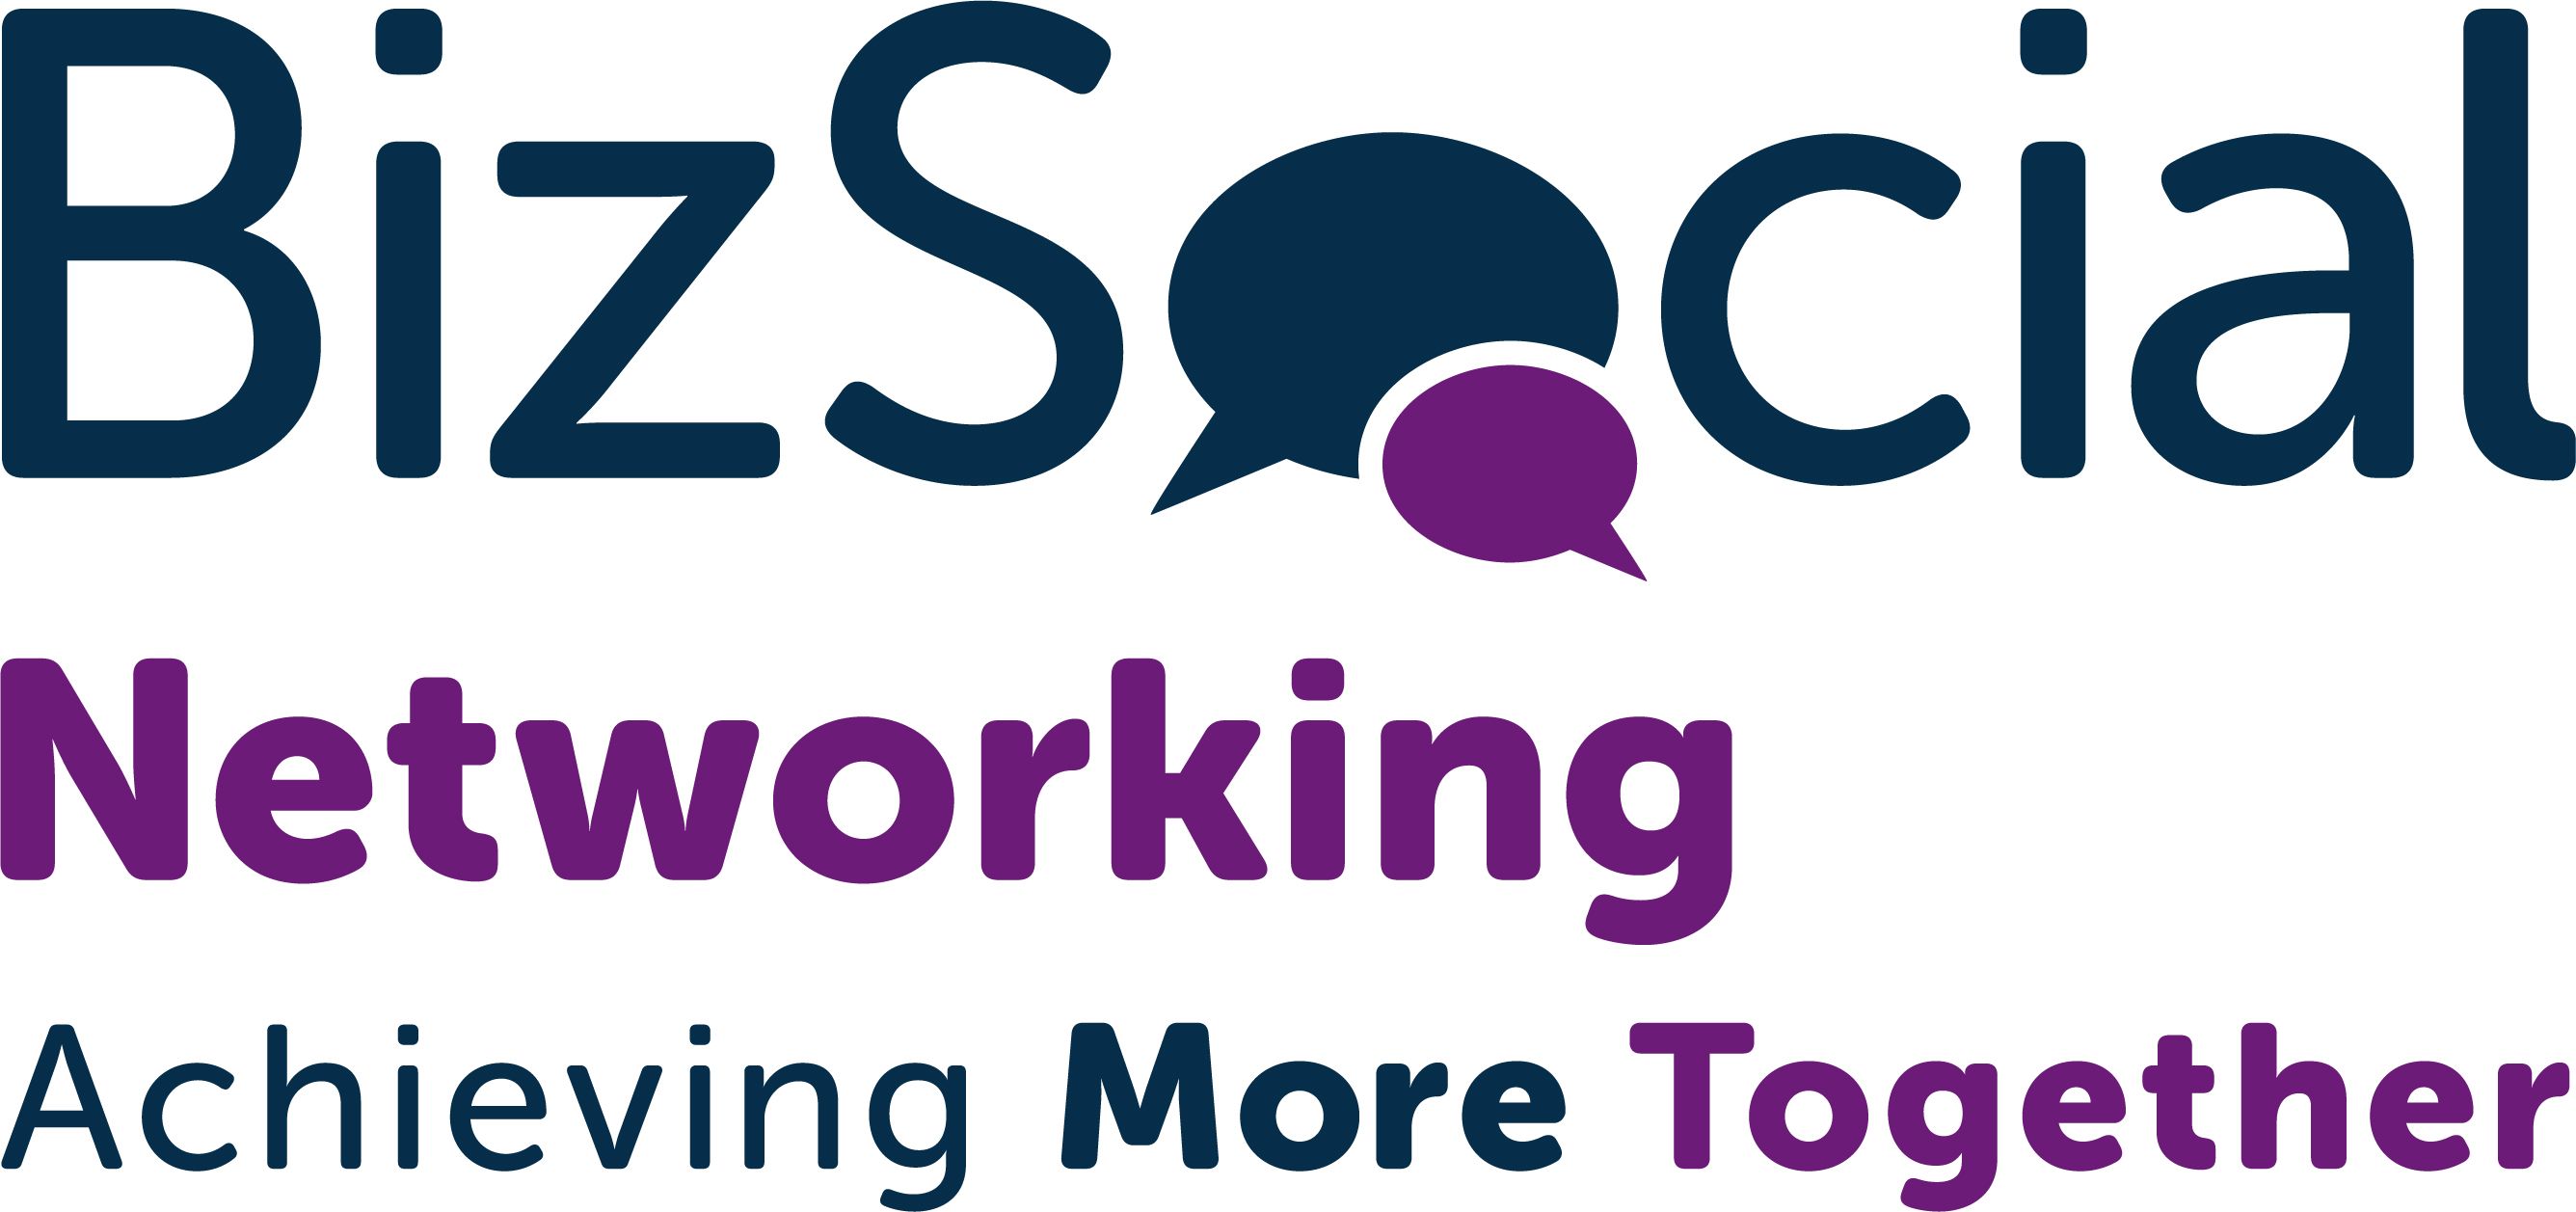 BizSocial Networking